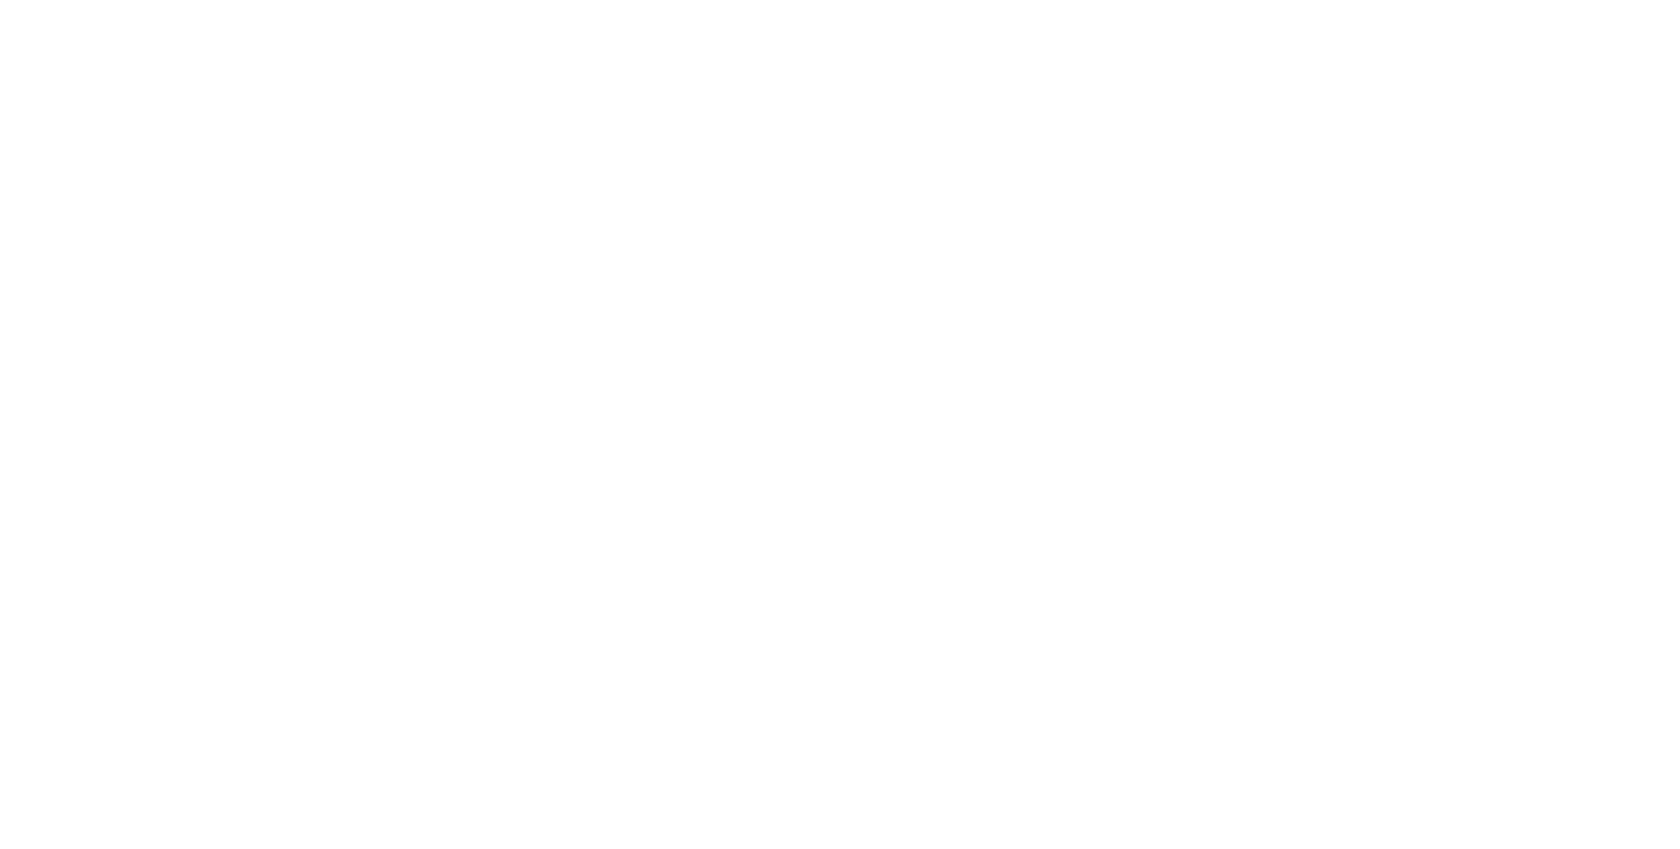 Верещагин П.П. Аю-Даг в Крыму. 1872. Холст, масло. 44,8х88,5. Ярославский художественный музей